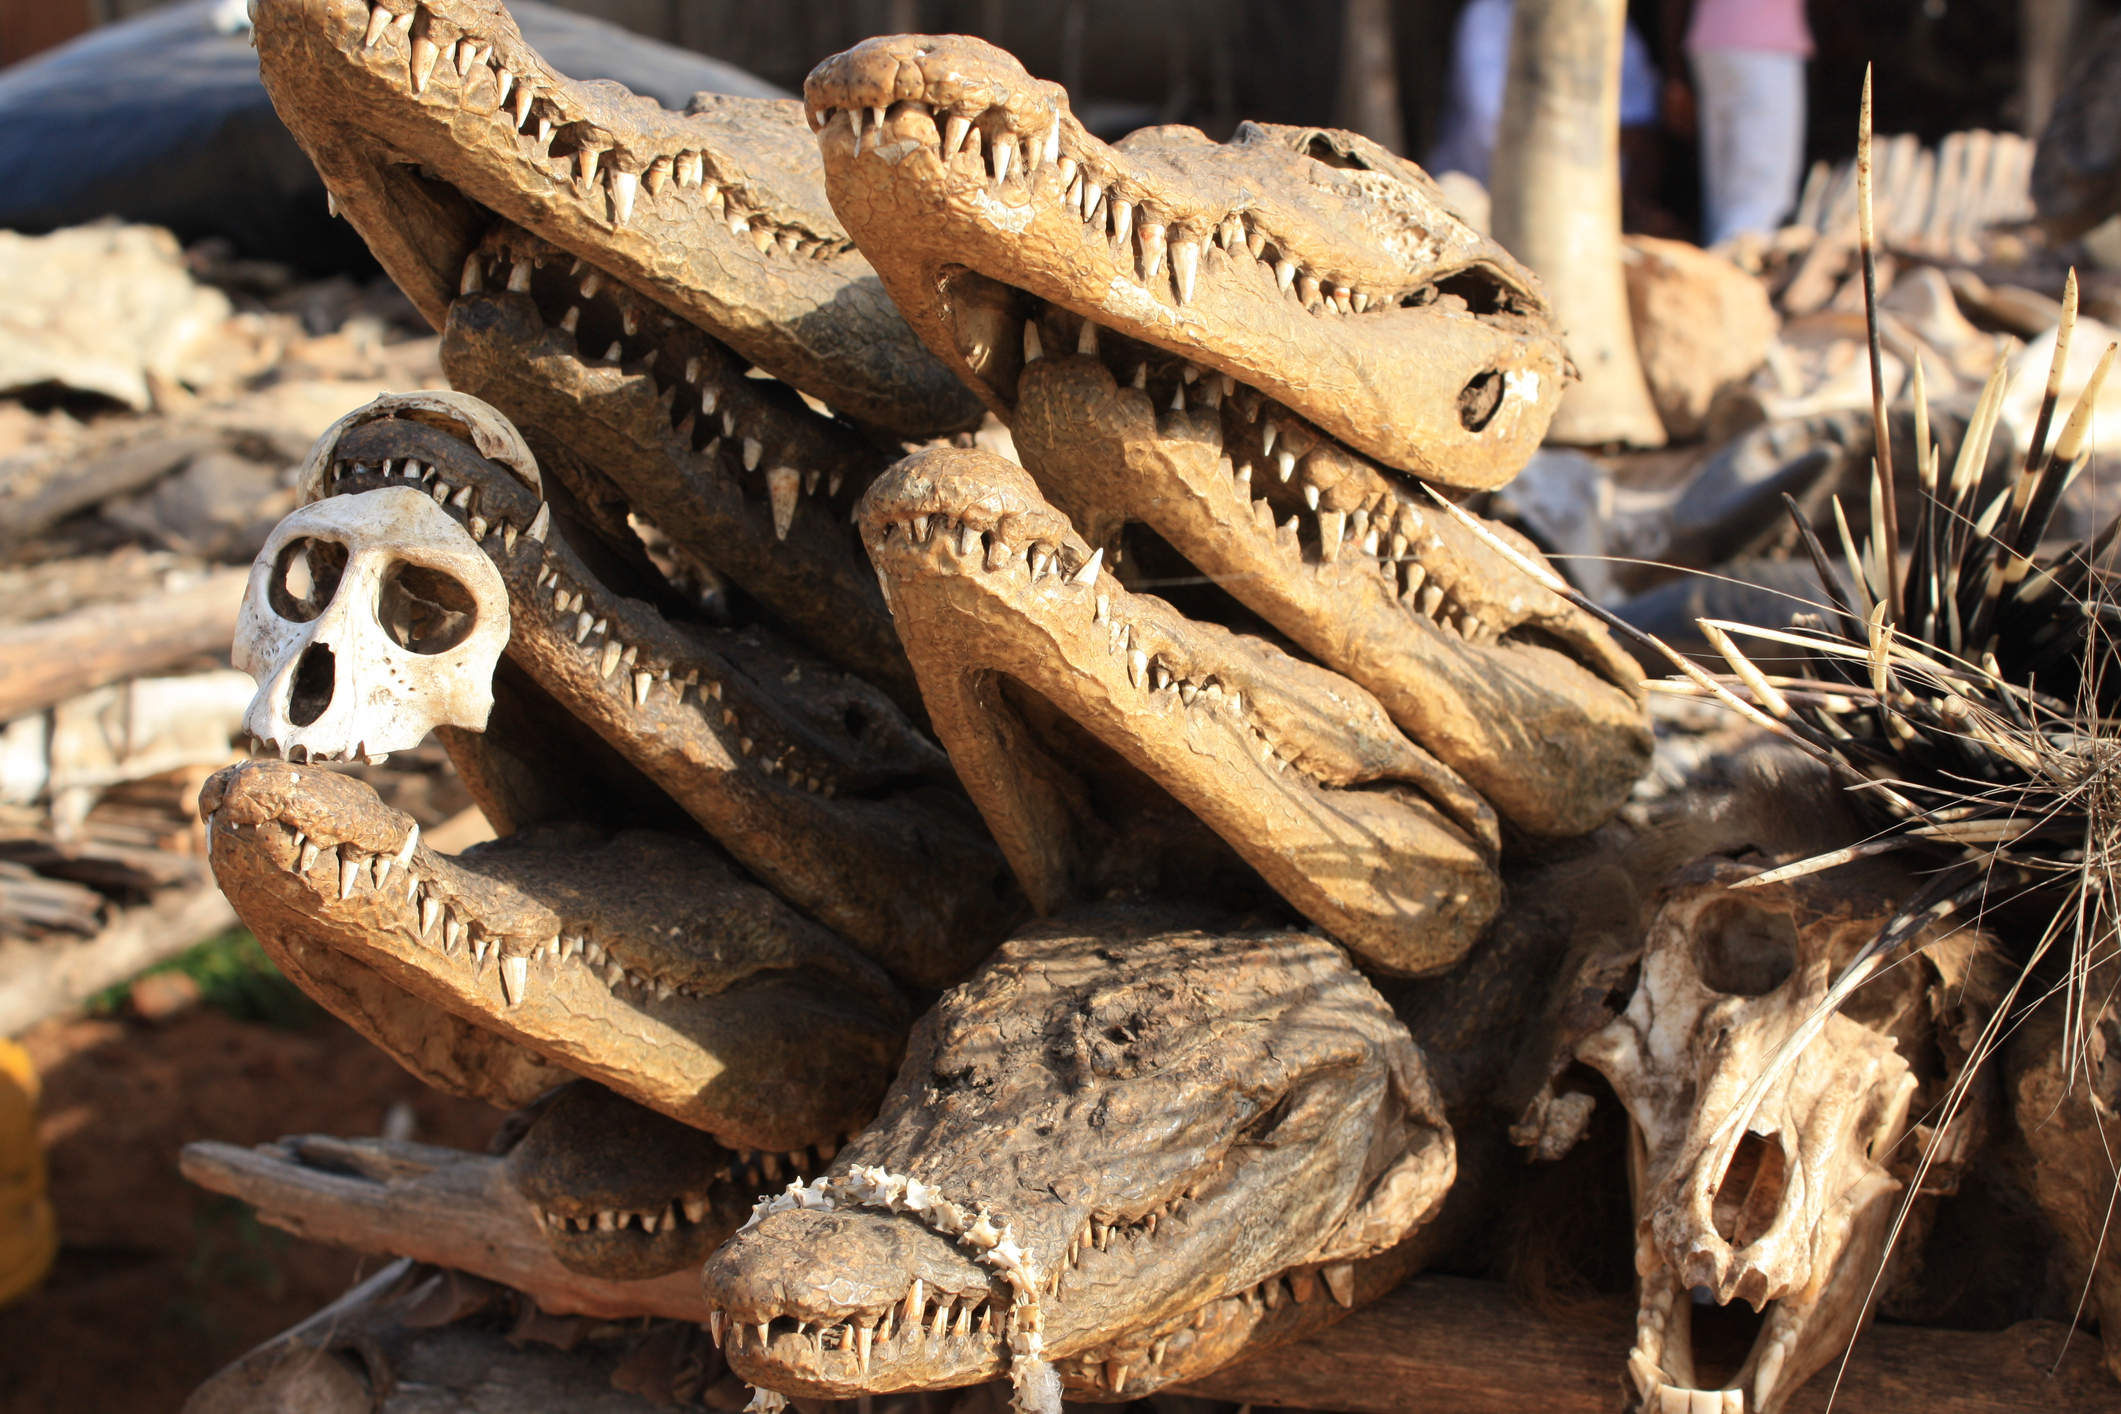 <strong>Пазар Акодесева (Того)</strong><br>
Голяма част от населението на Того практикува уникални традиции и обичаи, които изискват доста странни предмети, неоткриваеми на традиционните пазари. Смалени глави, черепи, плът и още много стряскащи неща могат да бъдат видени на този пазар